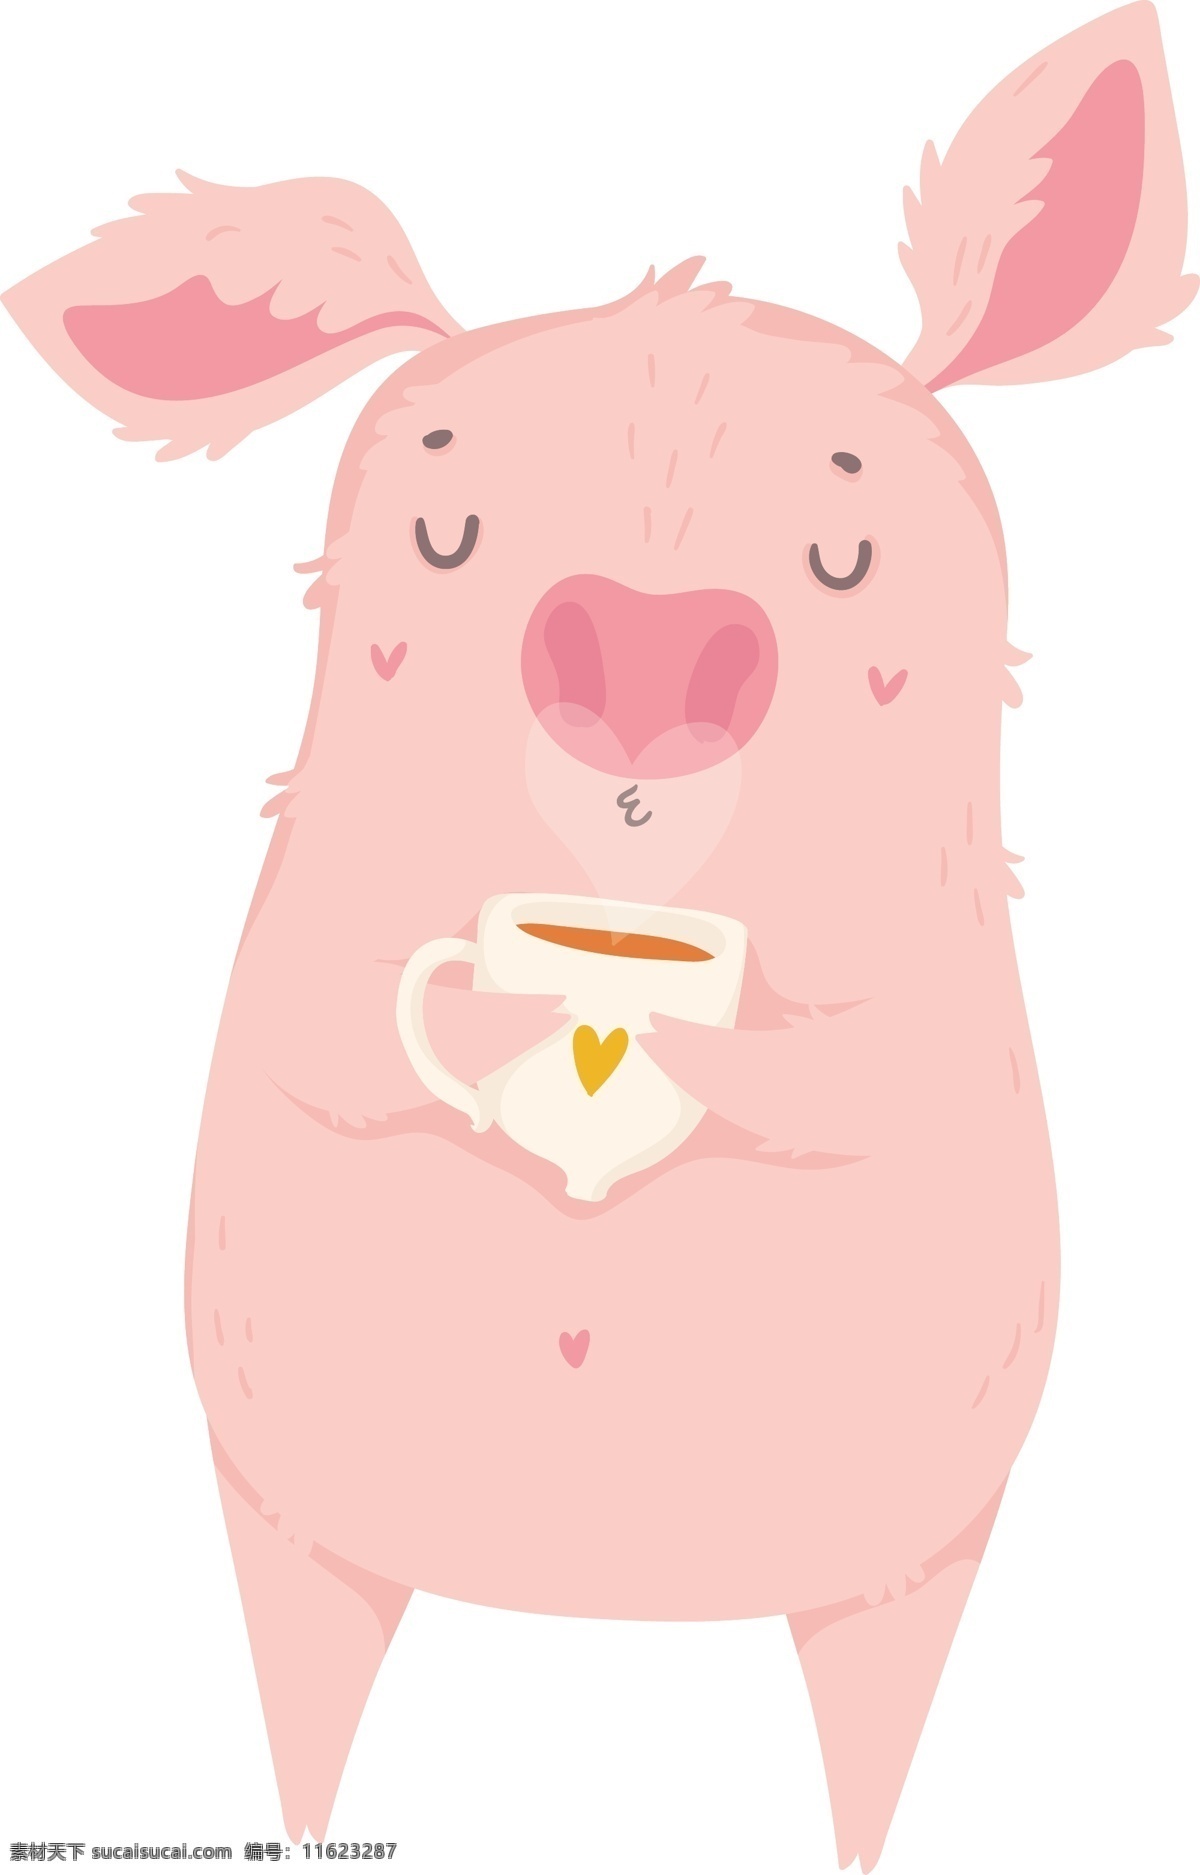 2019 猪年 手绘 卡通 粉色 小 猪 原创 商用 元素 可爱 动物 小清新 装饰 节日